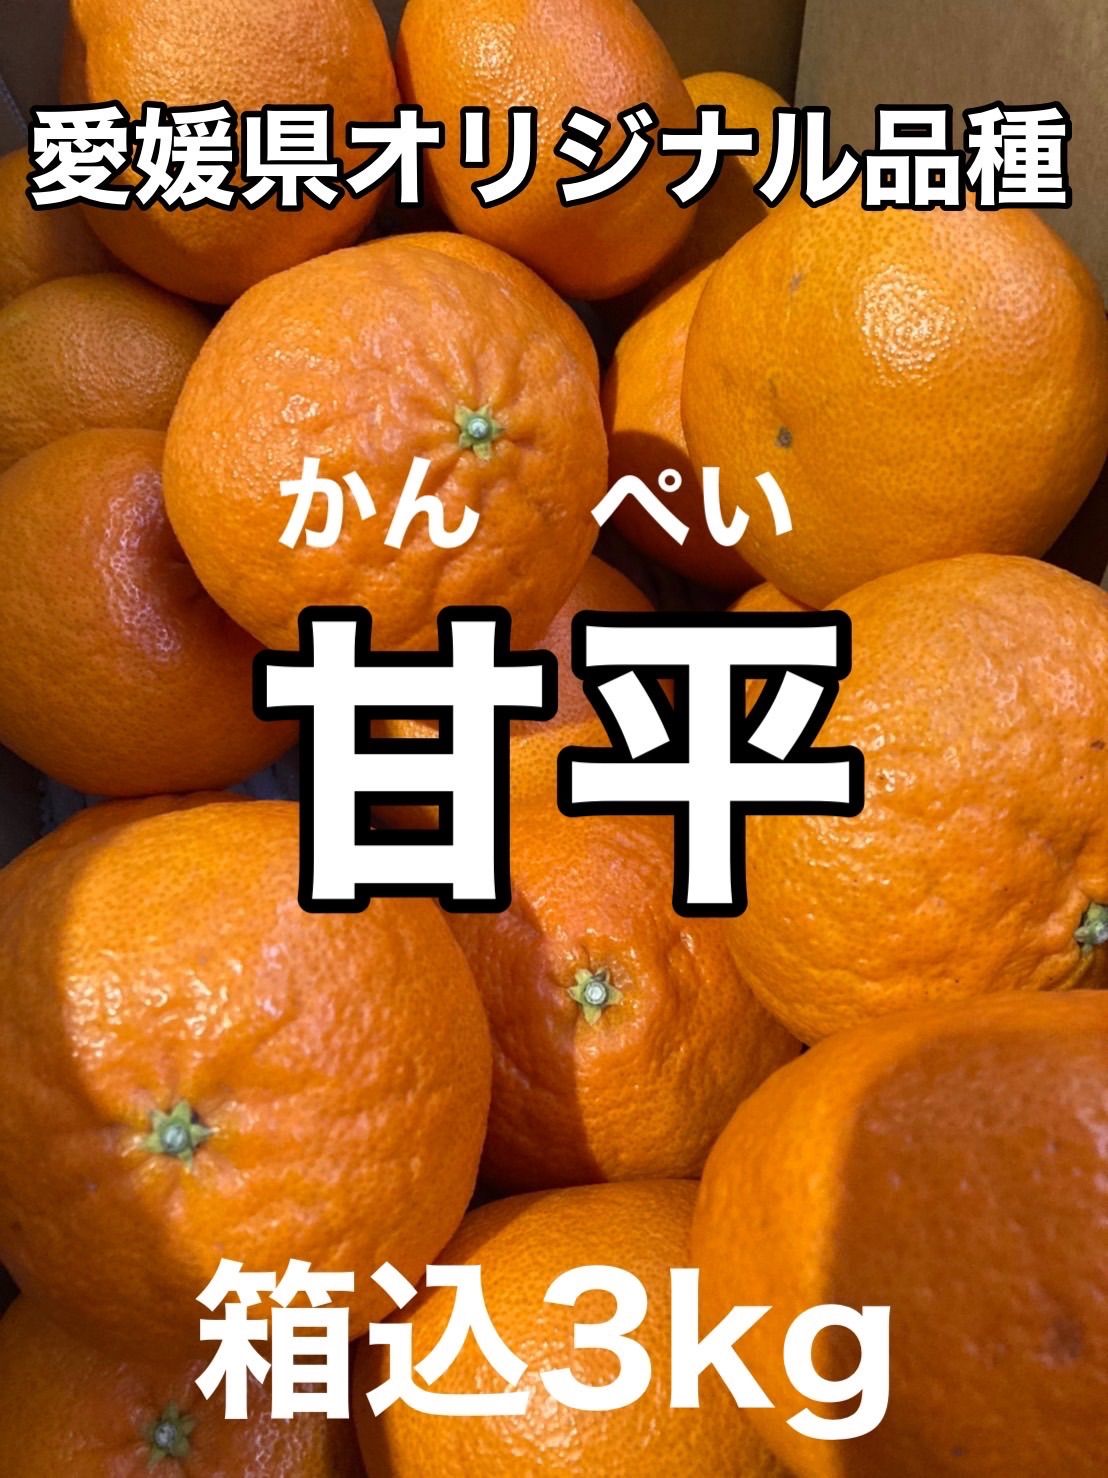 お気に入り】 ㊙️ 愛媛県宇和島産 爺の甘平 Aランク品 箱別約3kg 柑橘